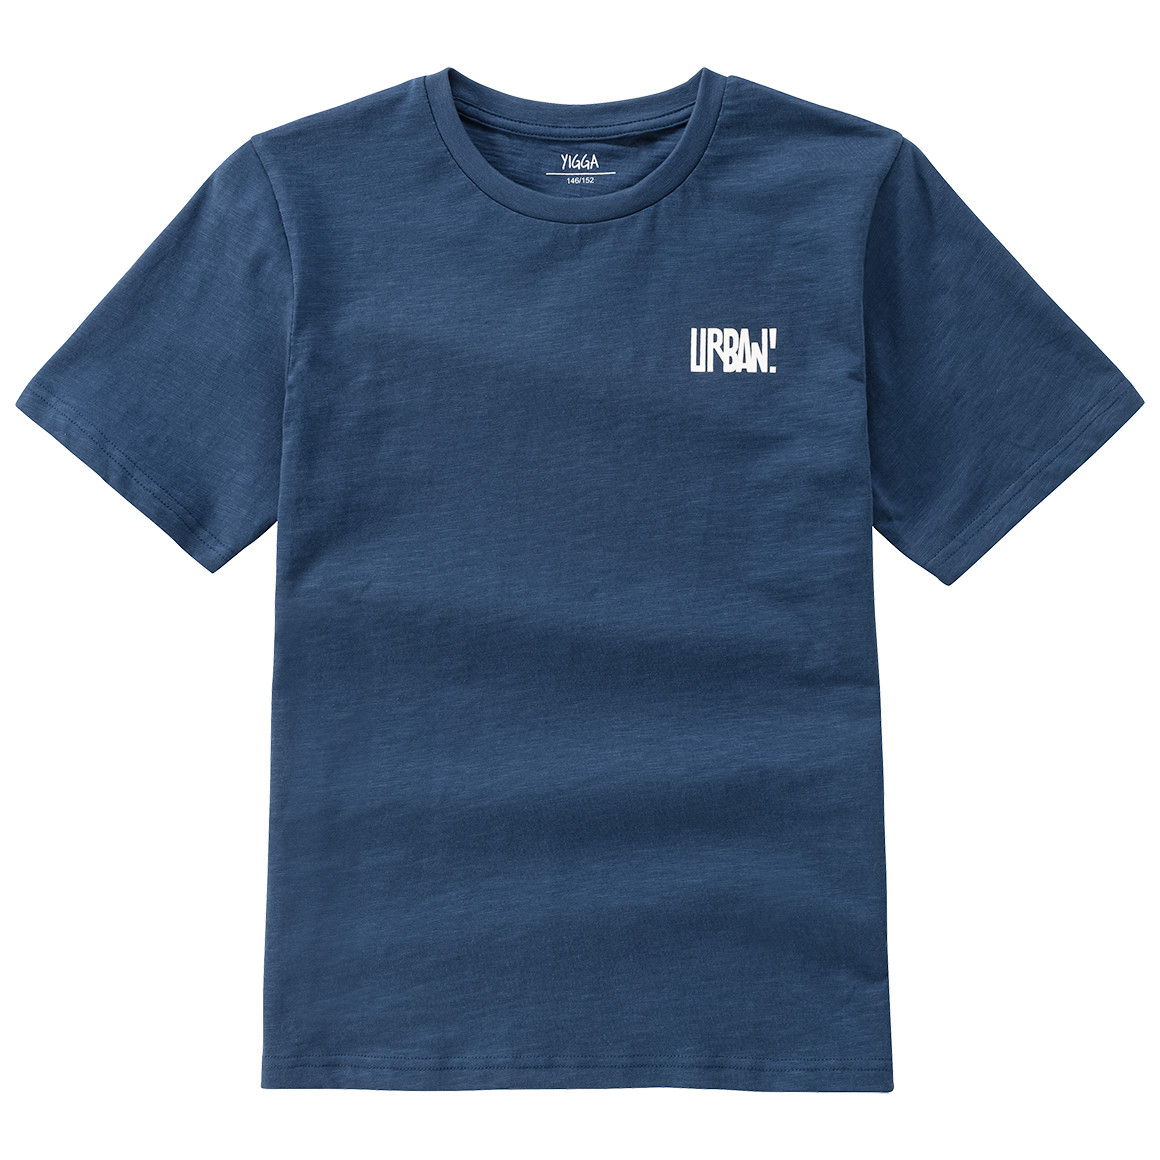 Jungen T-Shirt mit Rücken-Print von Yigga